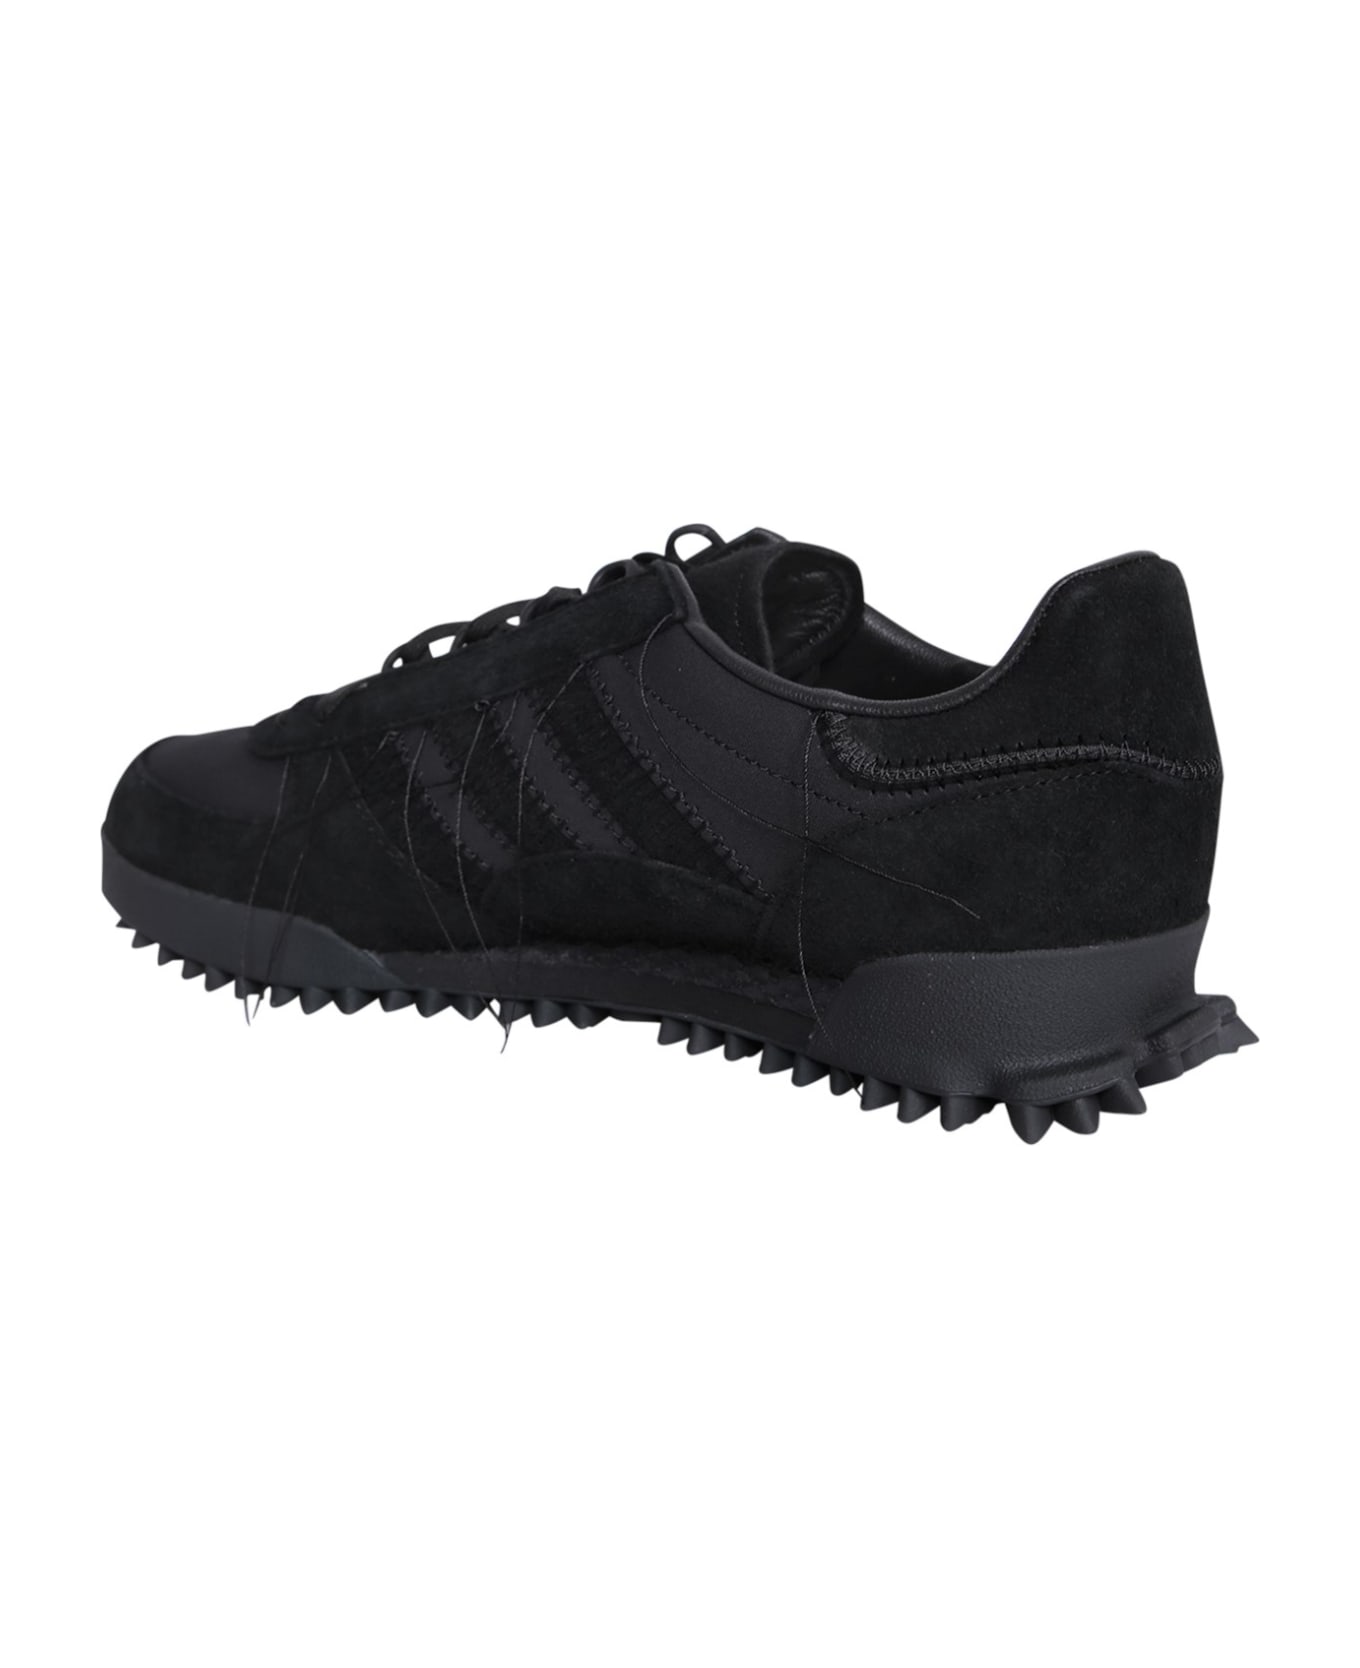 Y-3 Marathon Sneaker - Black